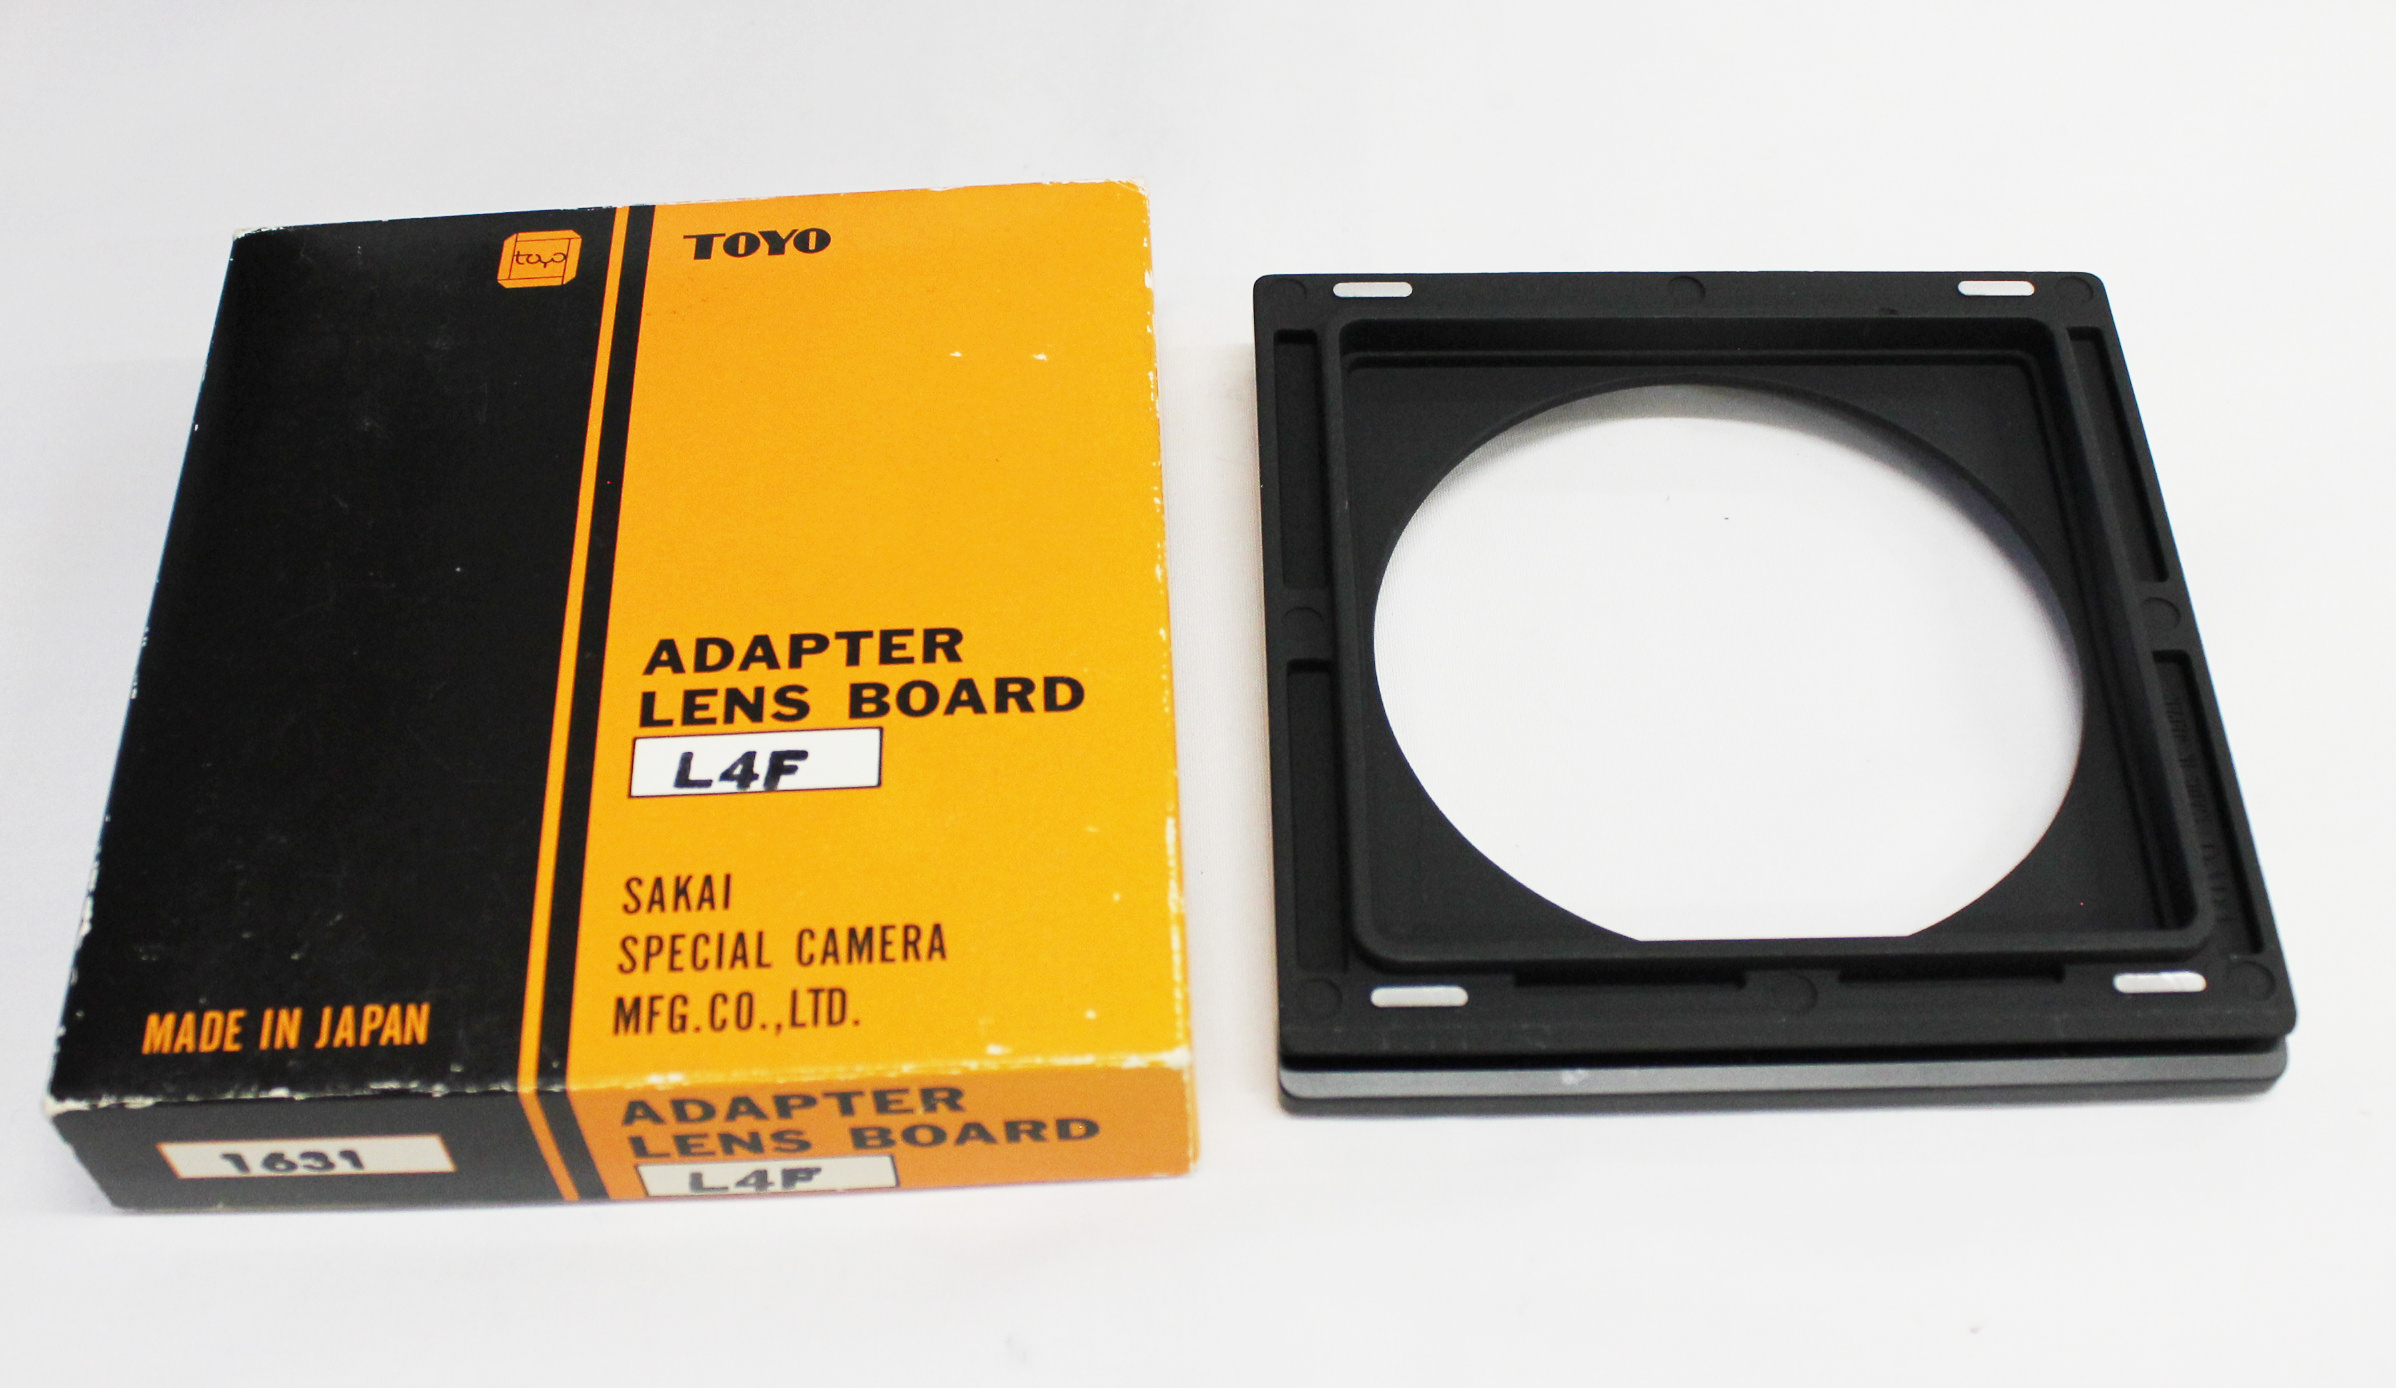 [Near Mint] Toyo Linhof Lens Board Adapter No.1631 AL4F for Toyo Field 45A 45A II from Japan 